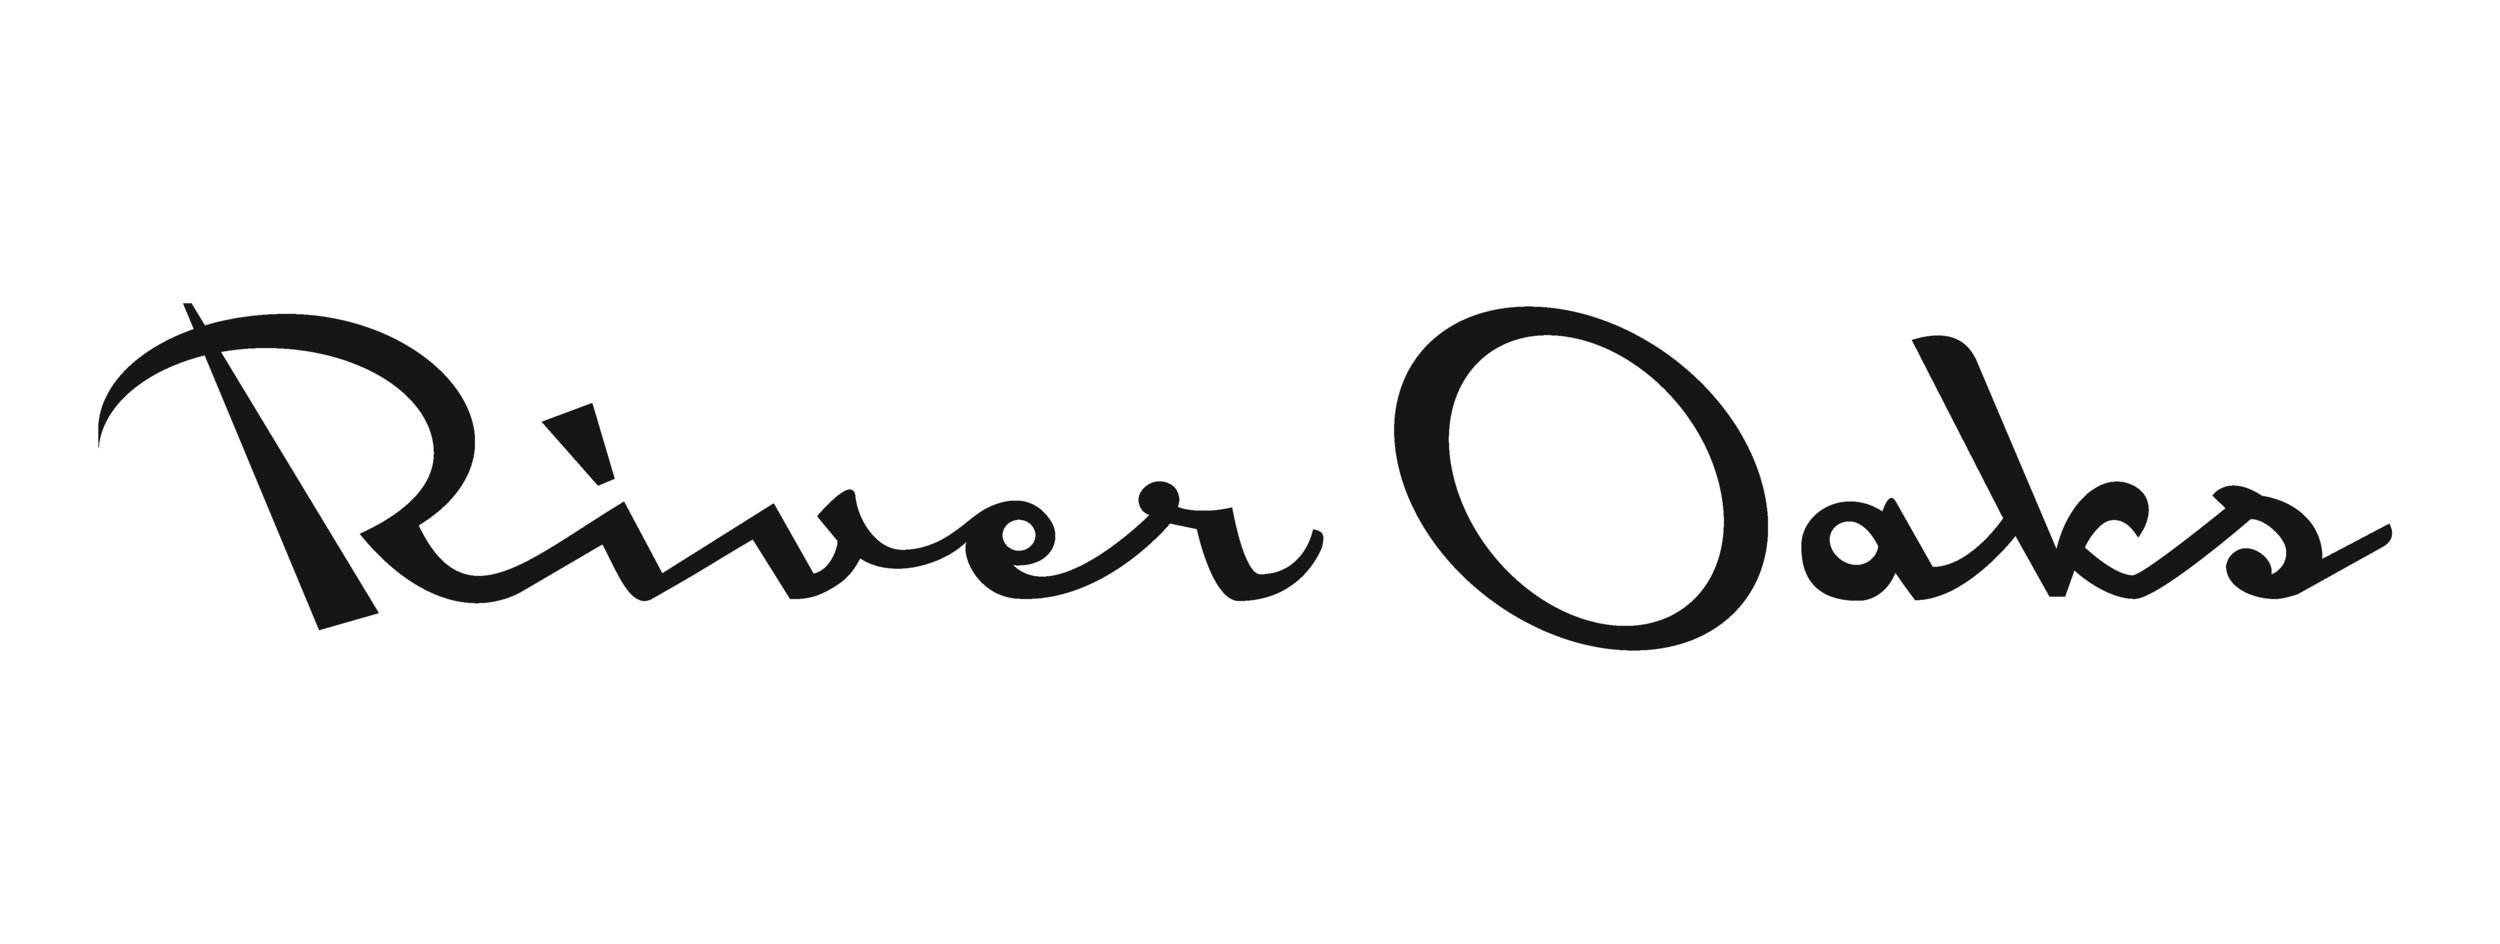 River Oaks_logo.jpg